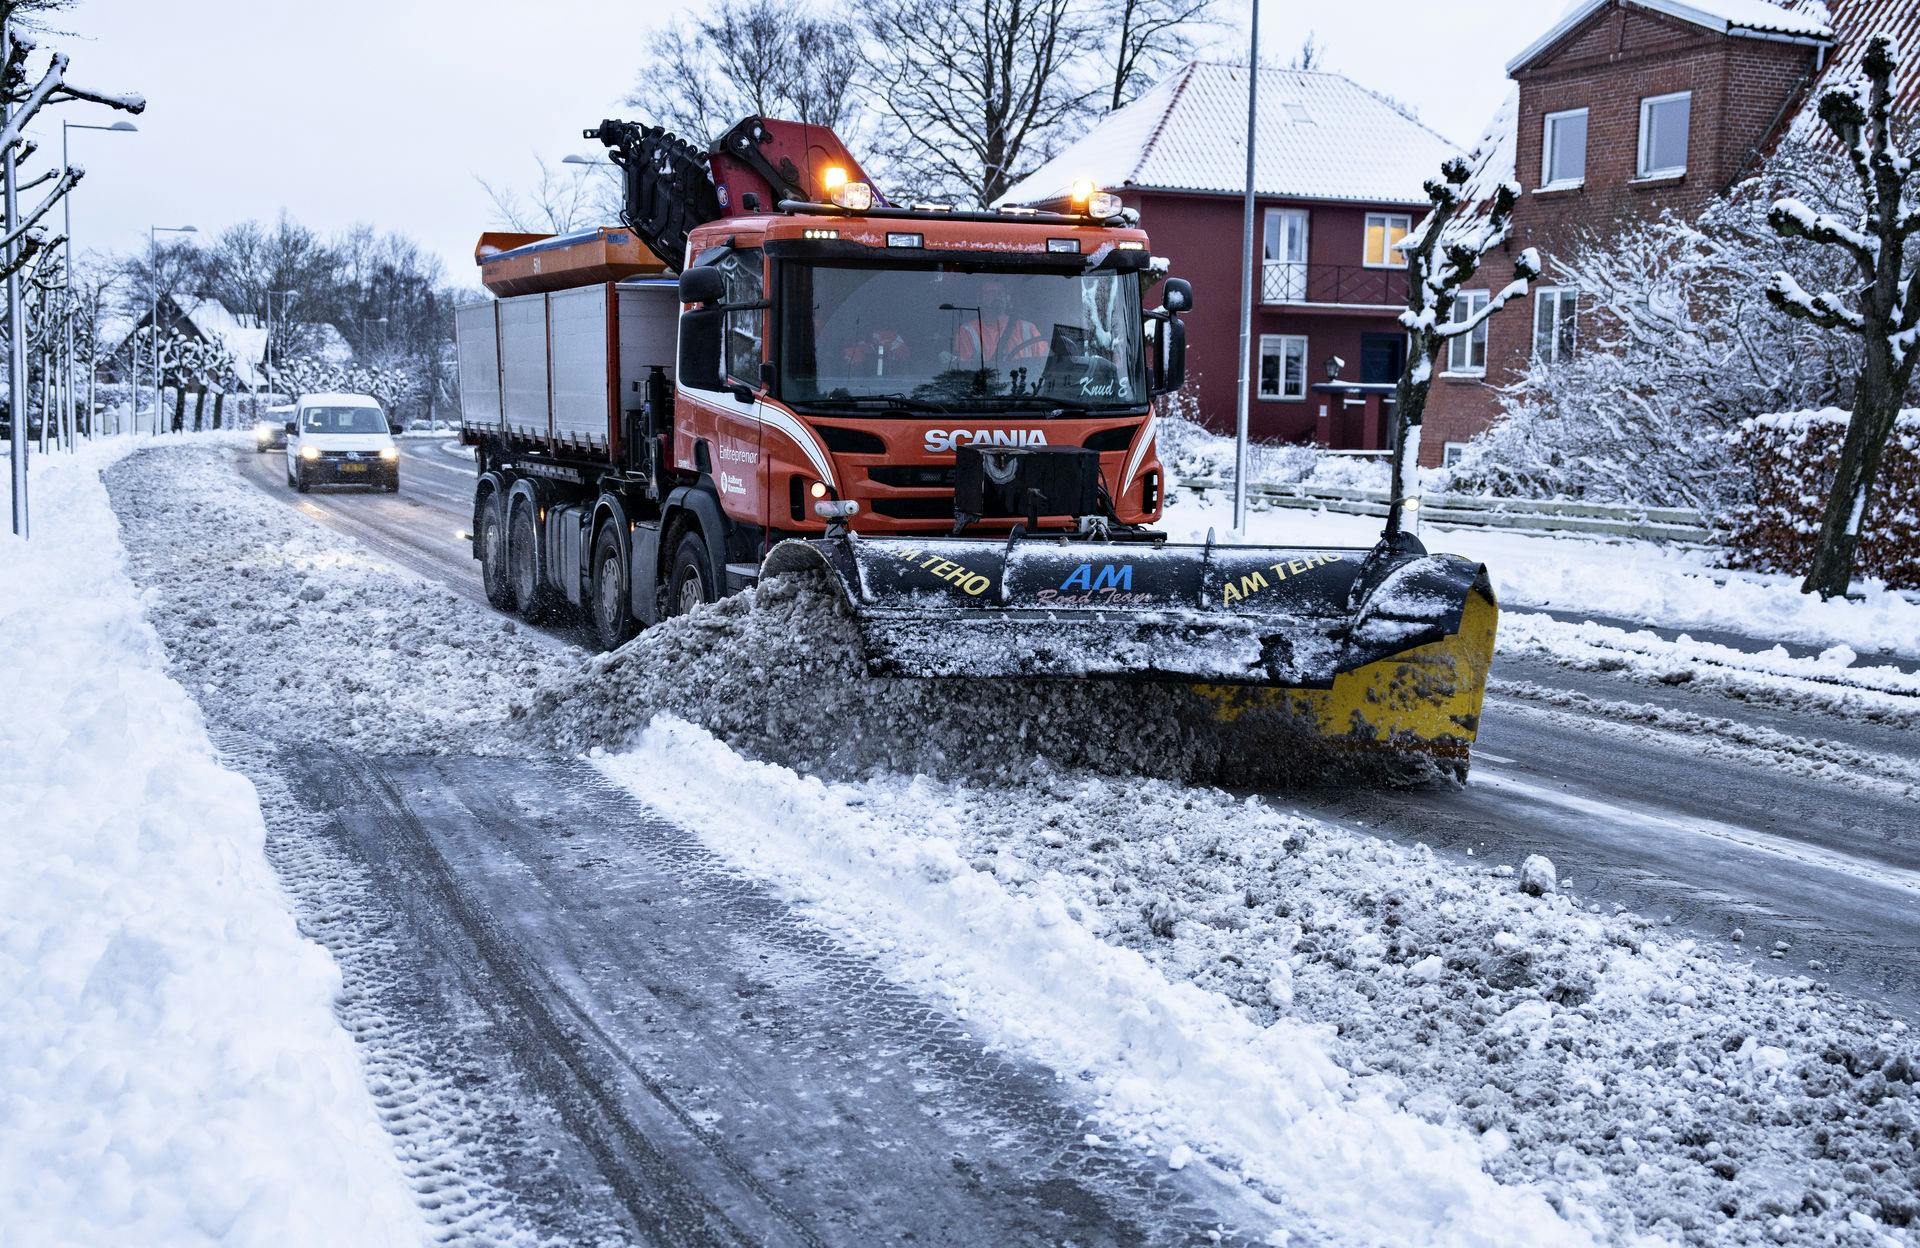 Her er sneploven i aktion i Aalborg.